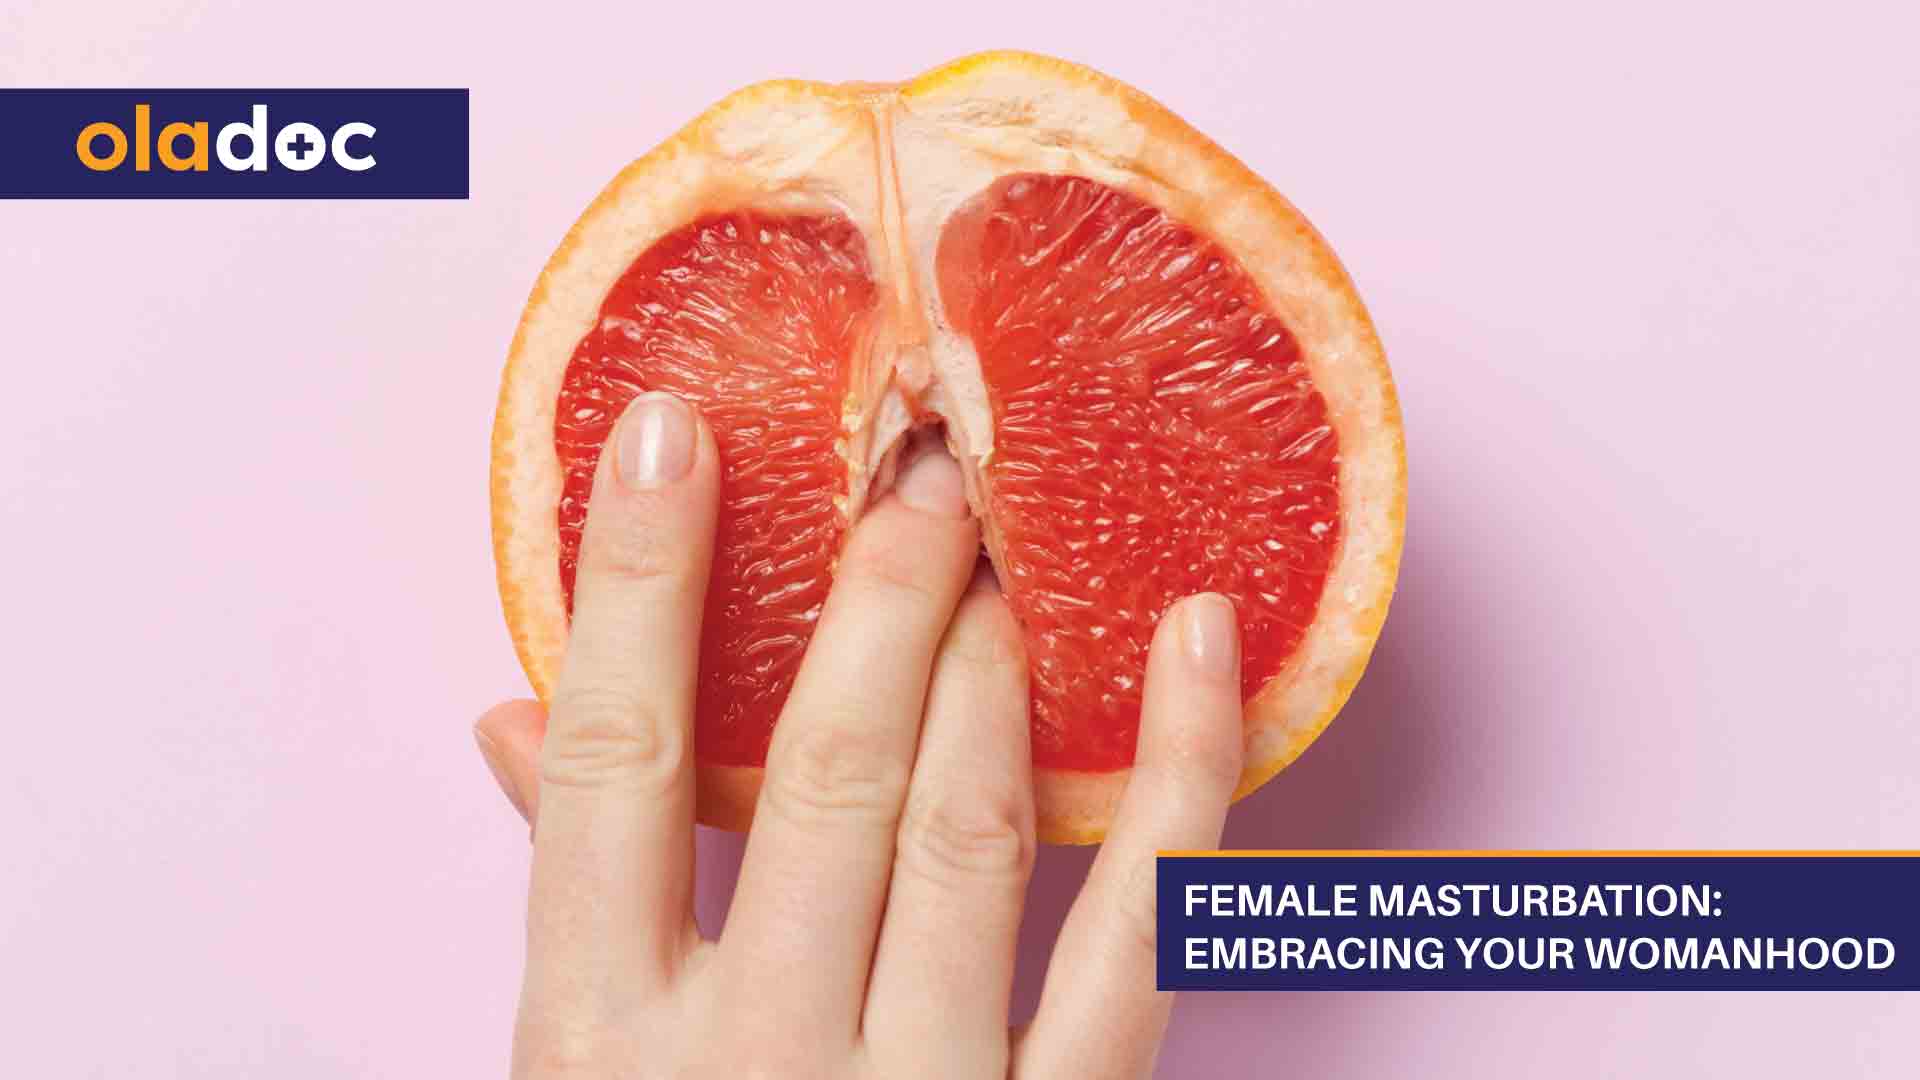 Female masturbation over indulgence